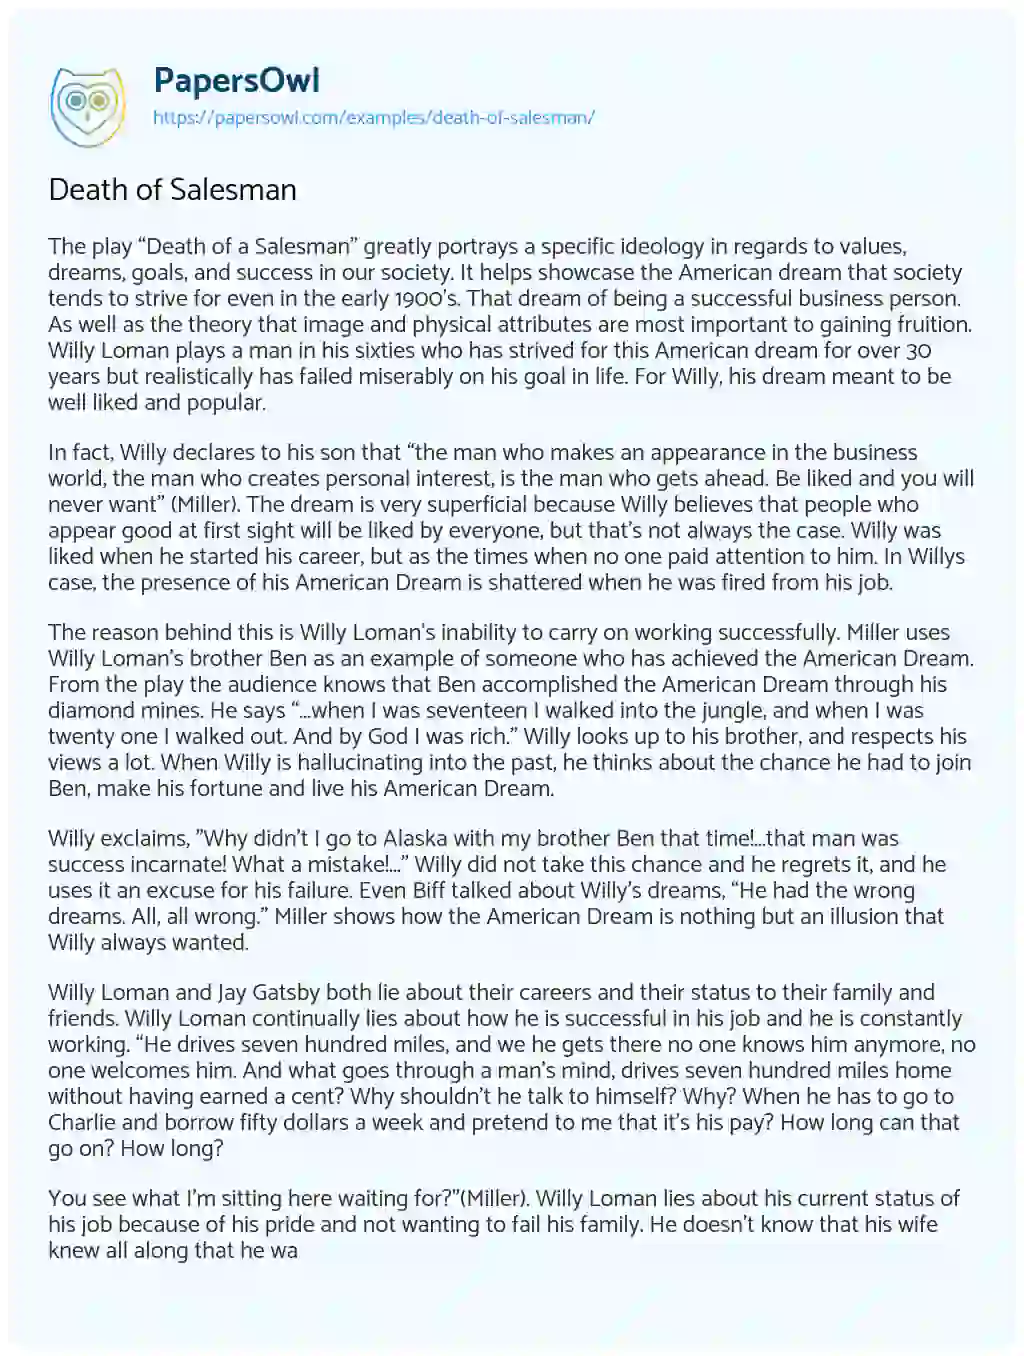 Essay on Death of Salesman